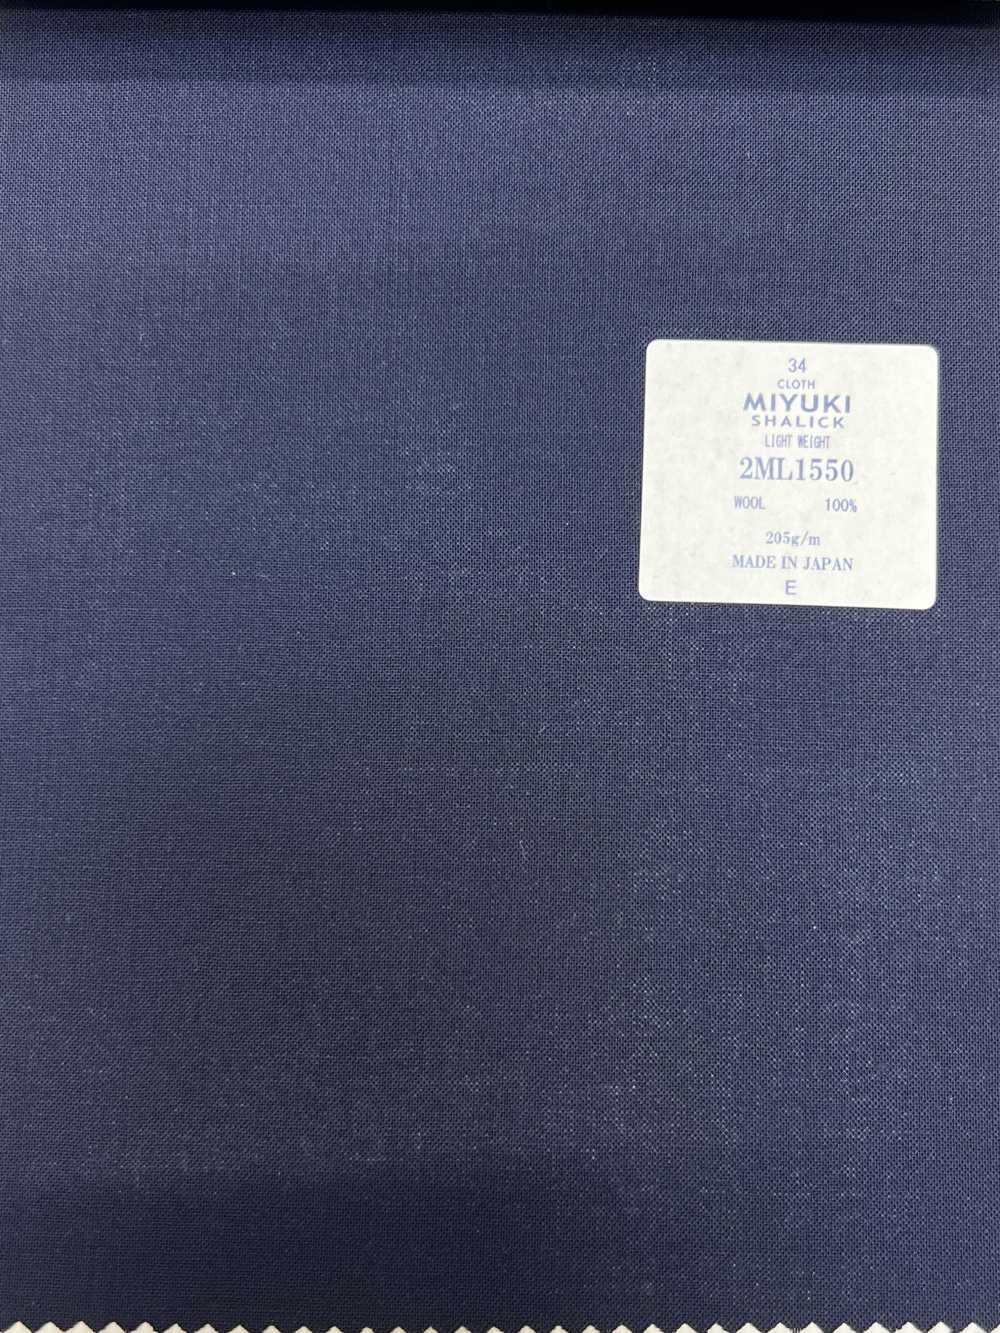 2ML1550 MIYUKI COMFORT SHALICK LIGHT WEIGHT Navy[Textile] Miyuki Keori (Miyuki)